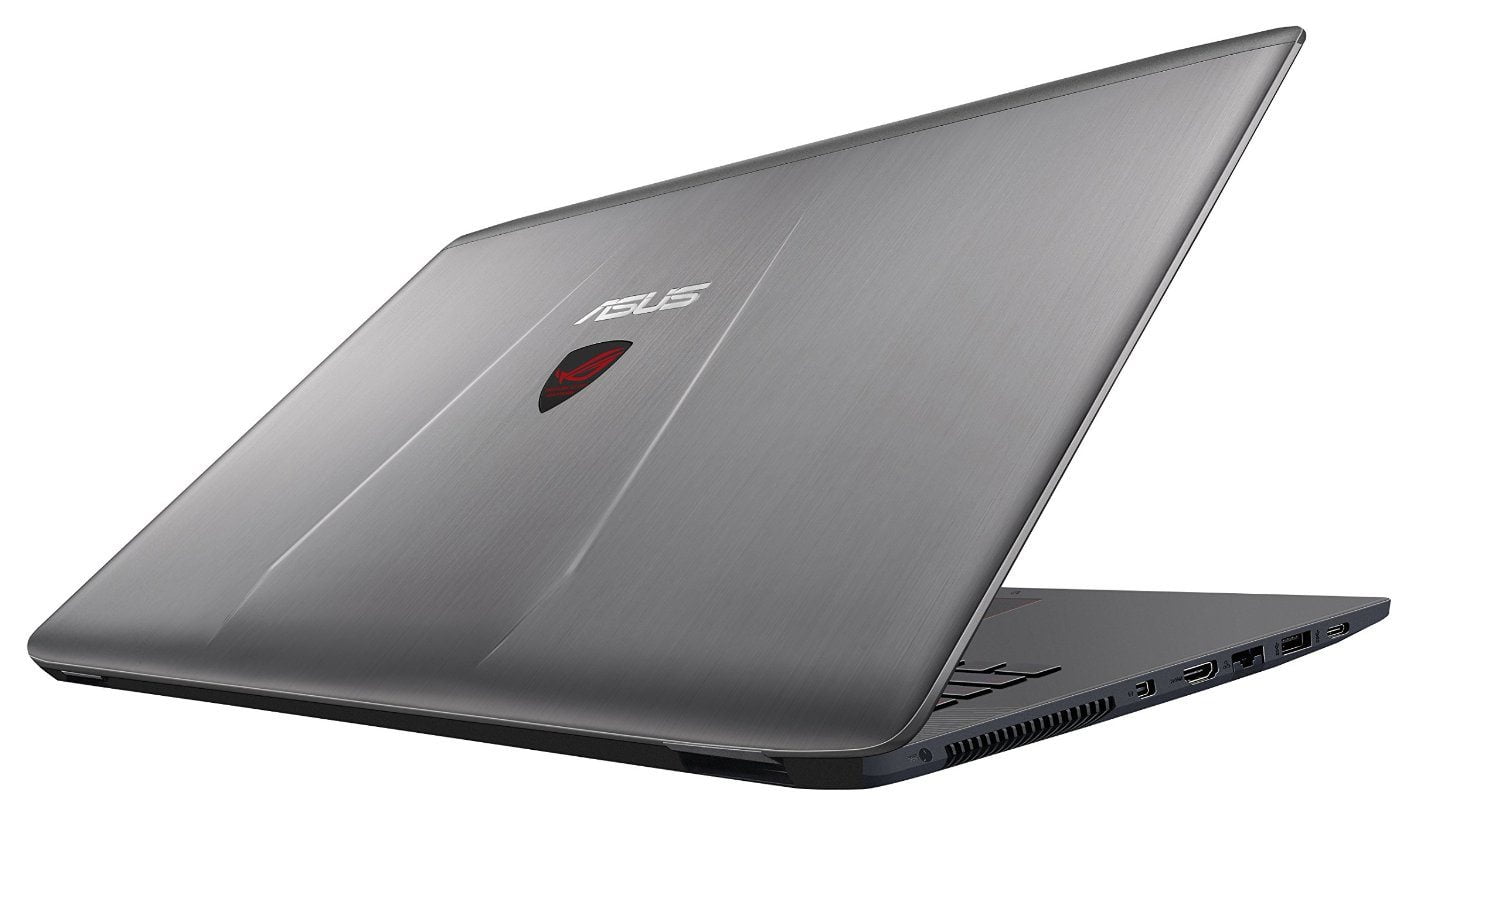 ASUS ROG GL752VW Gaming Laptop - best gaming laptop under 1500